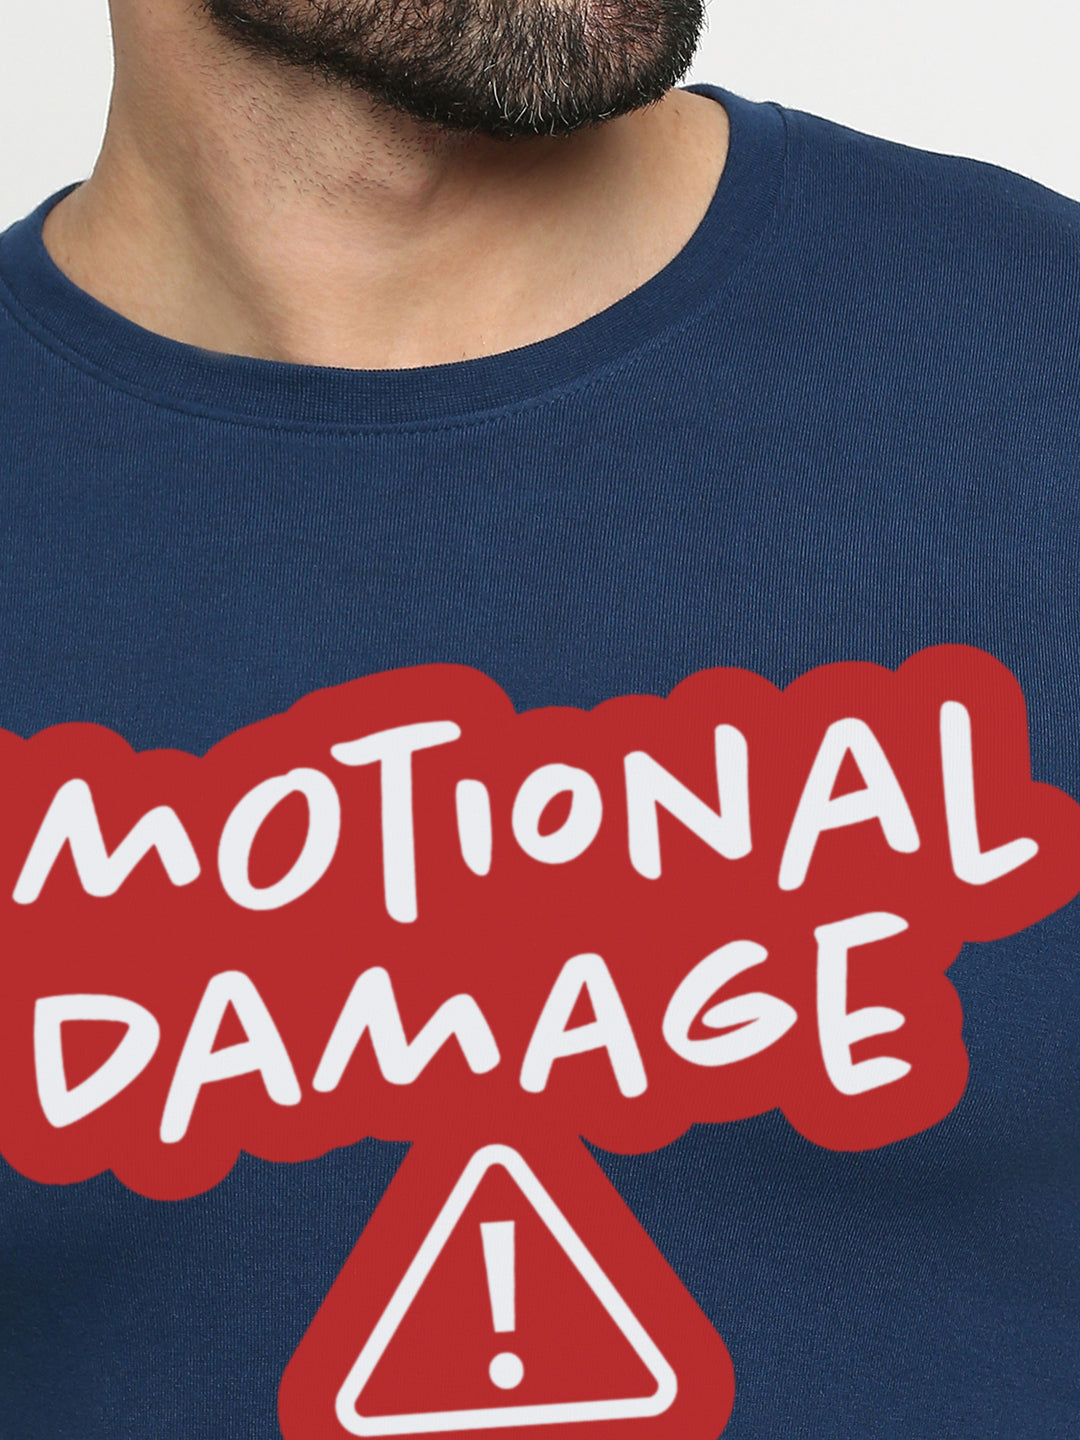 Emotional Damage T-Shirt